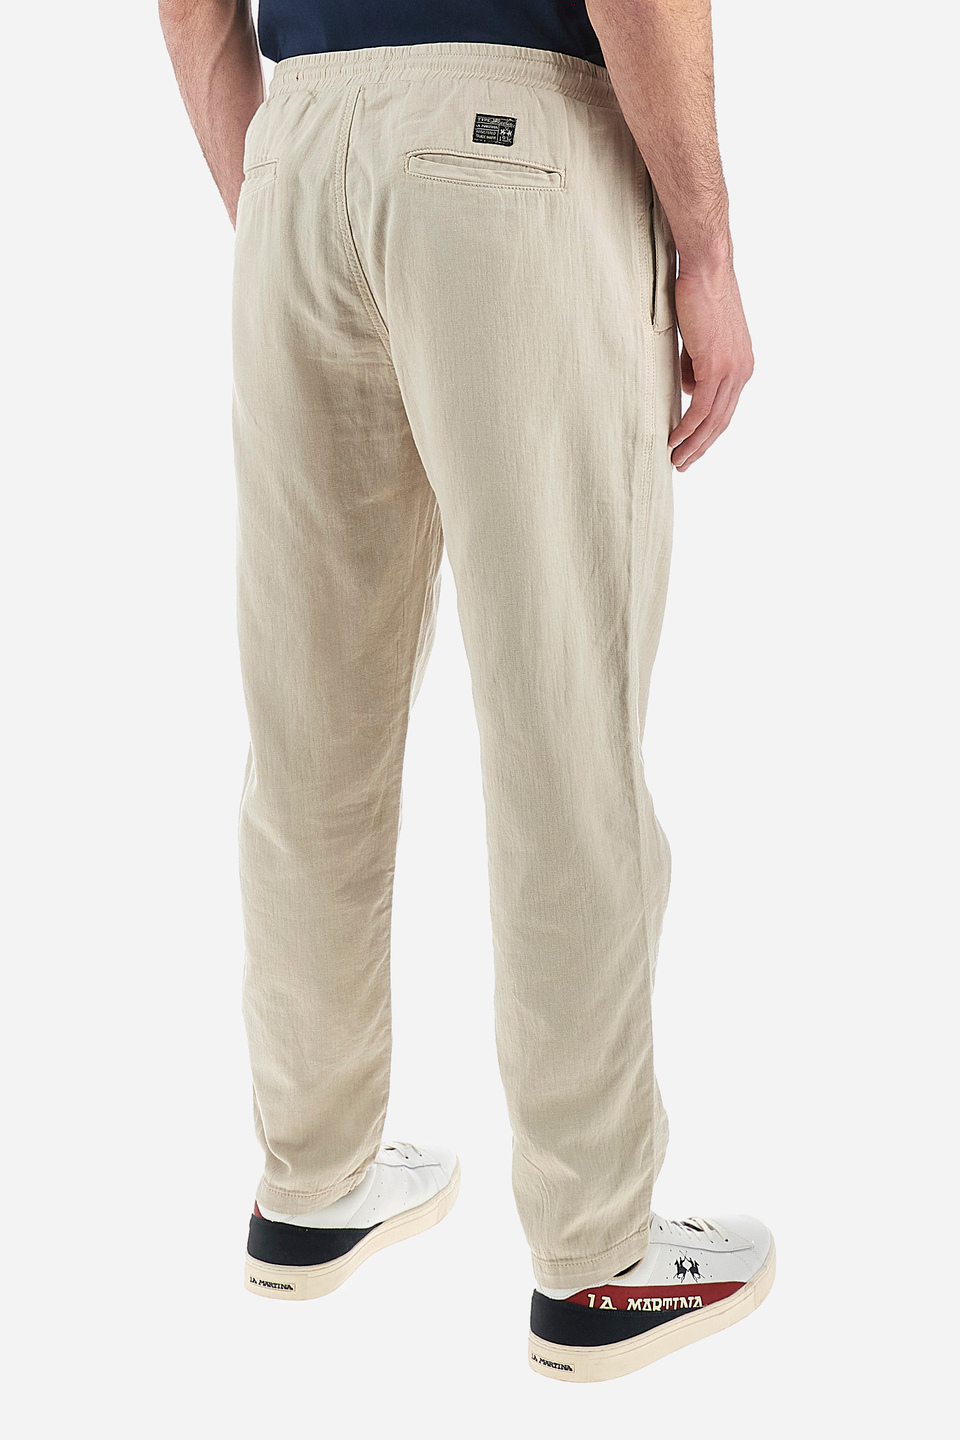 Pantaloni da uomo in cotone e lino regular fit- Vann | La Martina - Official Online Shop